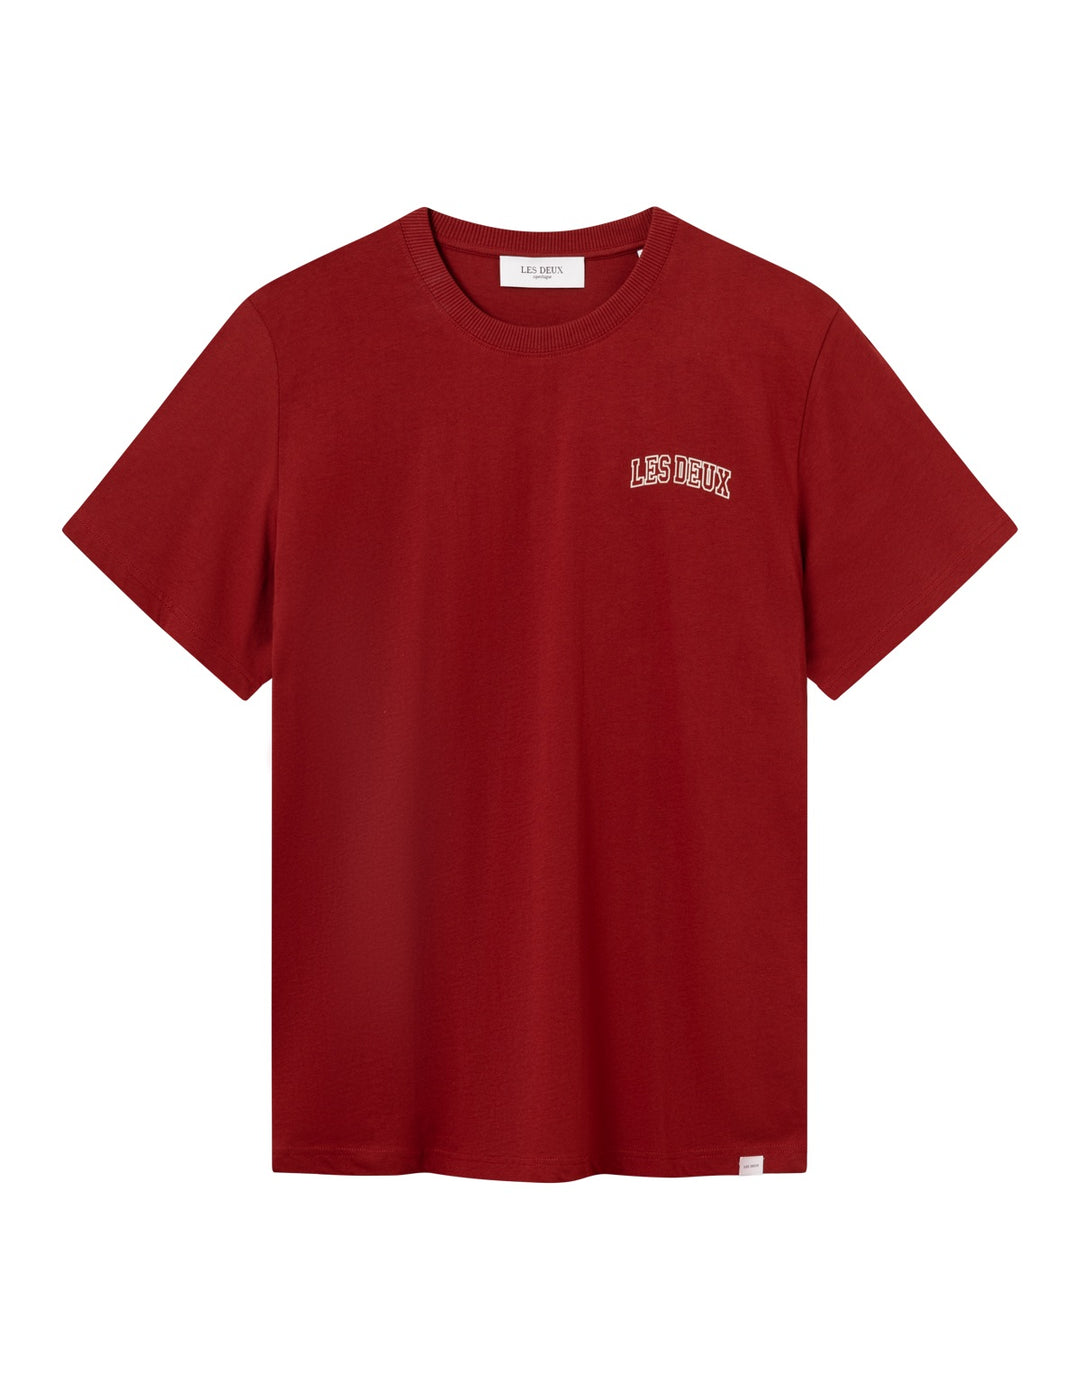 Blake T-Shirt  Burnt Red/Light Sand